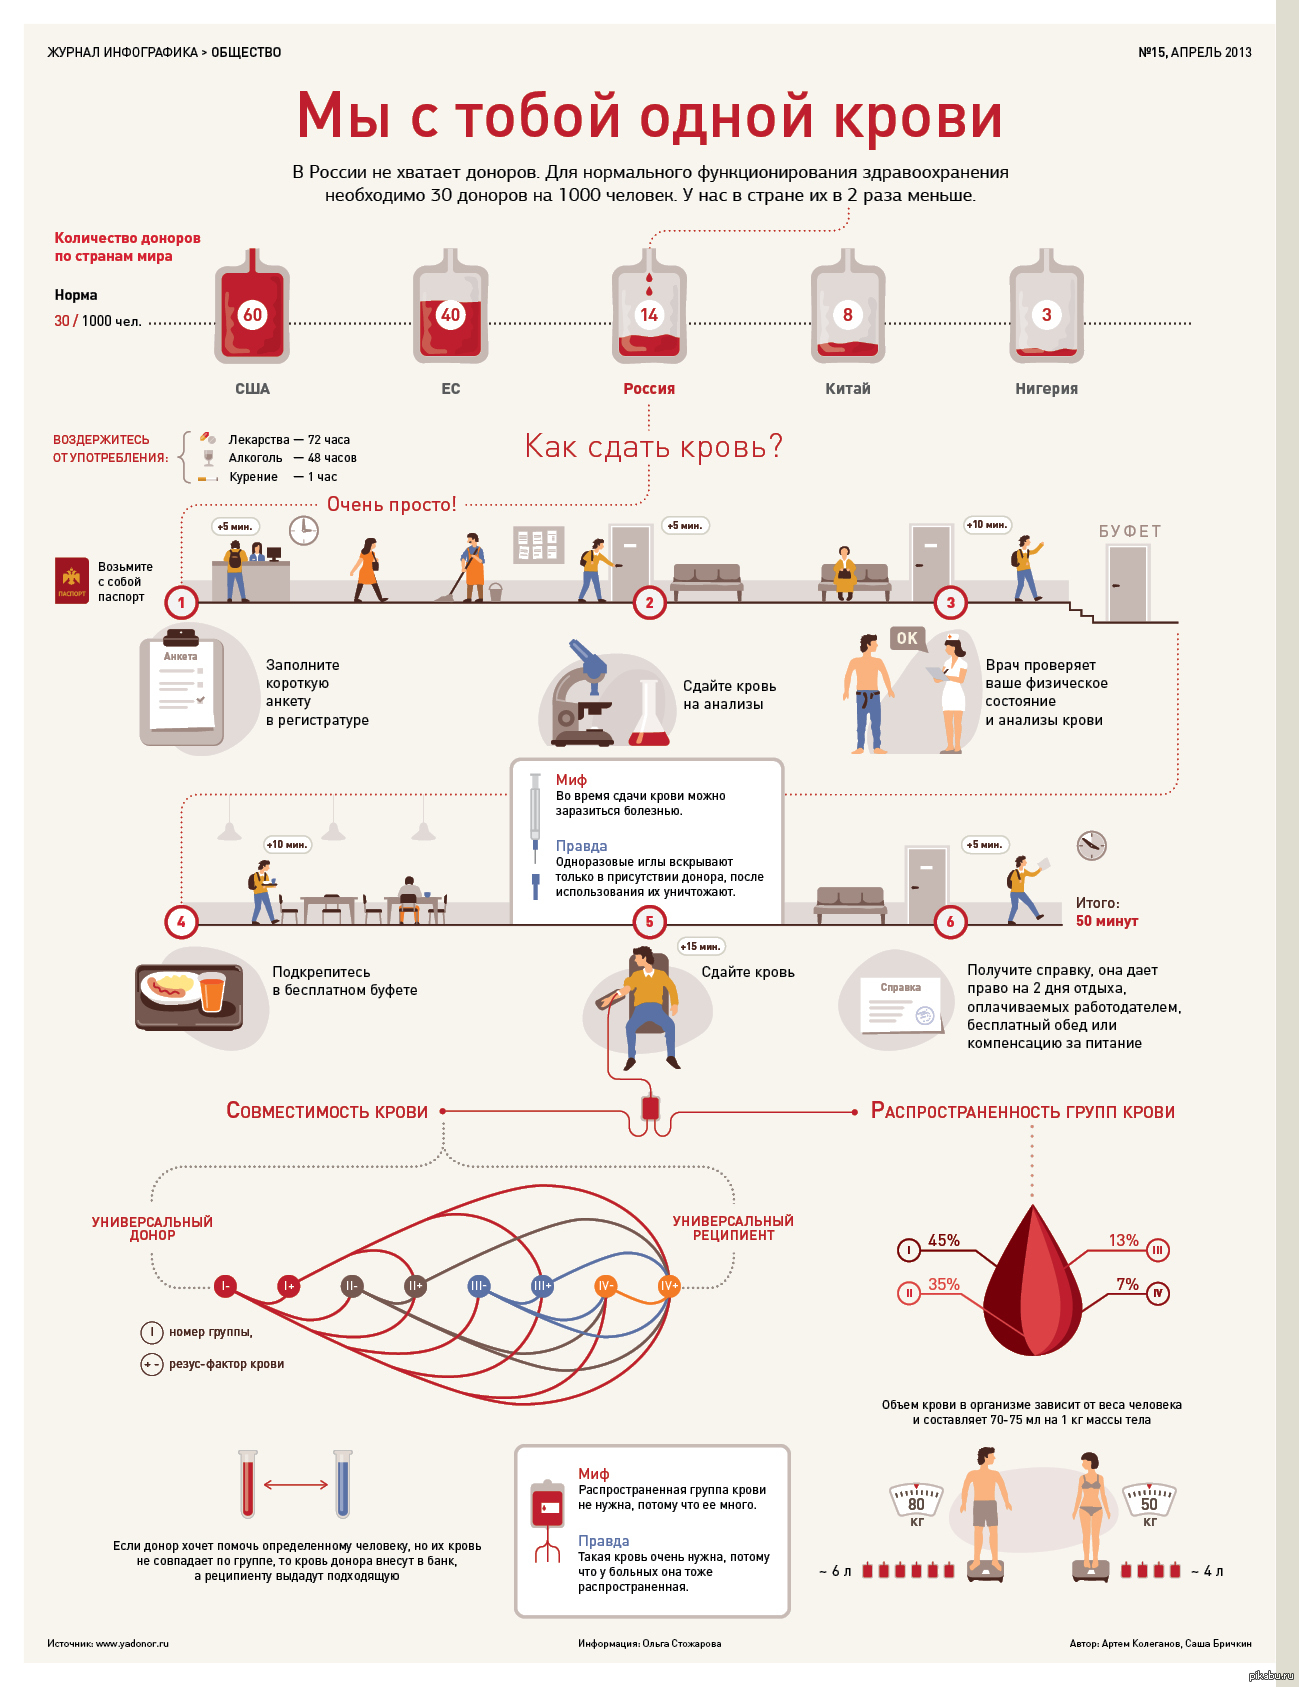 Донор хорошие качества. Донор крови инфографика. Инфографика по донорству крови. Донорство крови инфографика. Инфографика сдача крови.